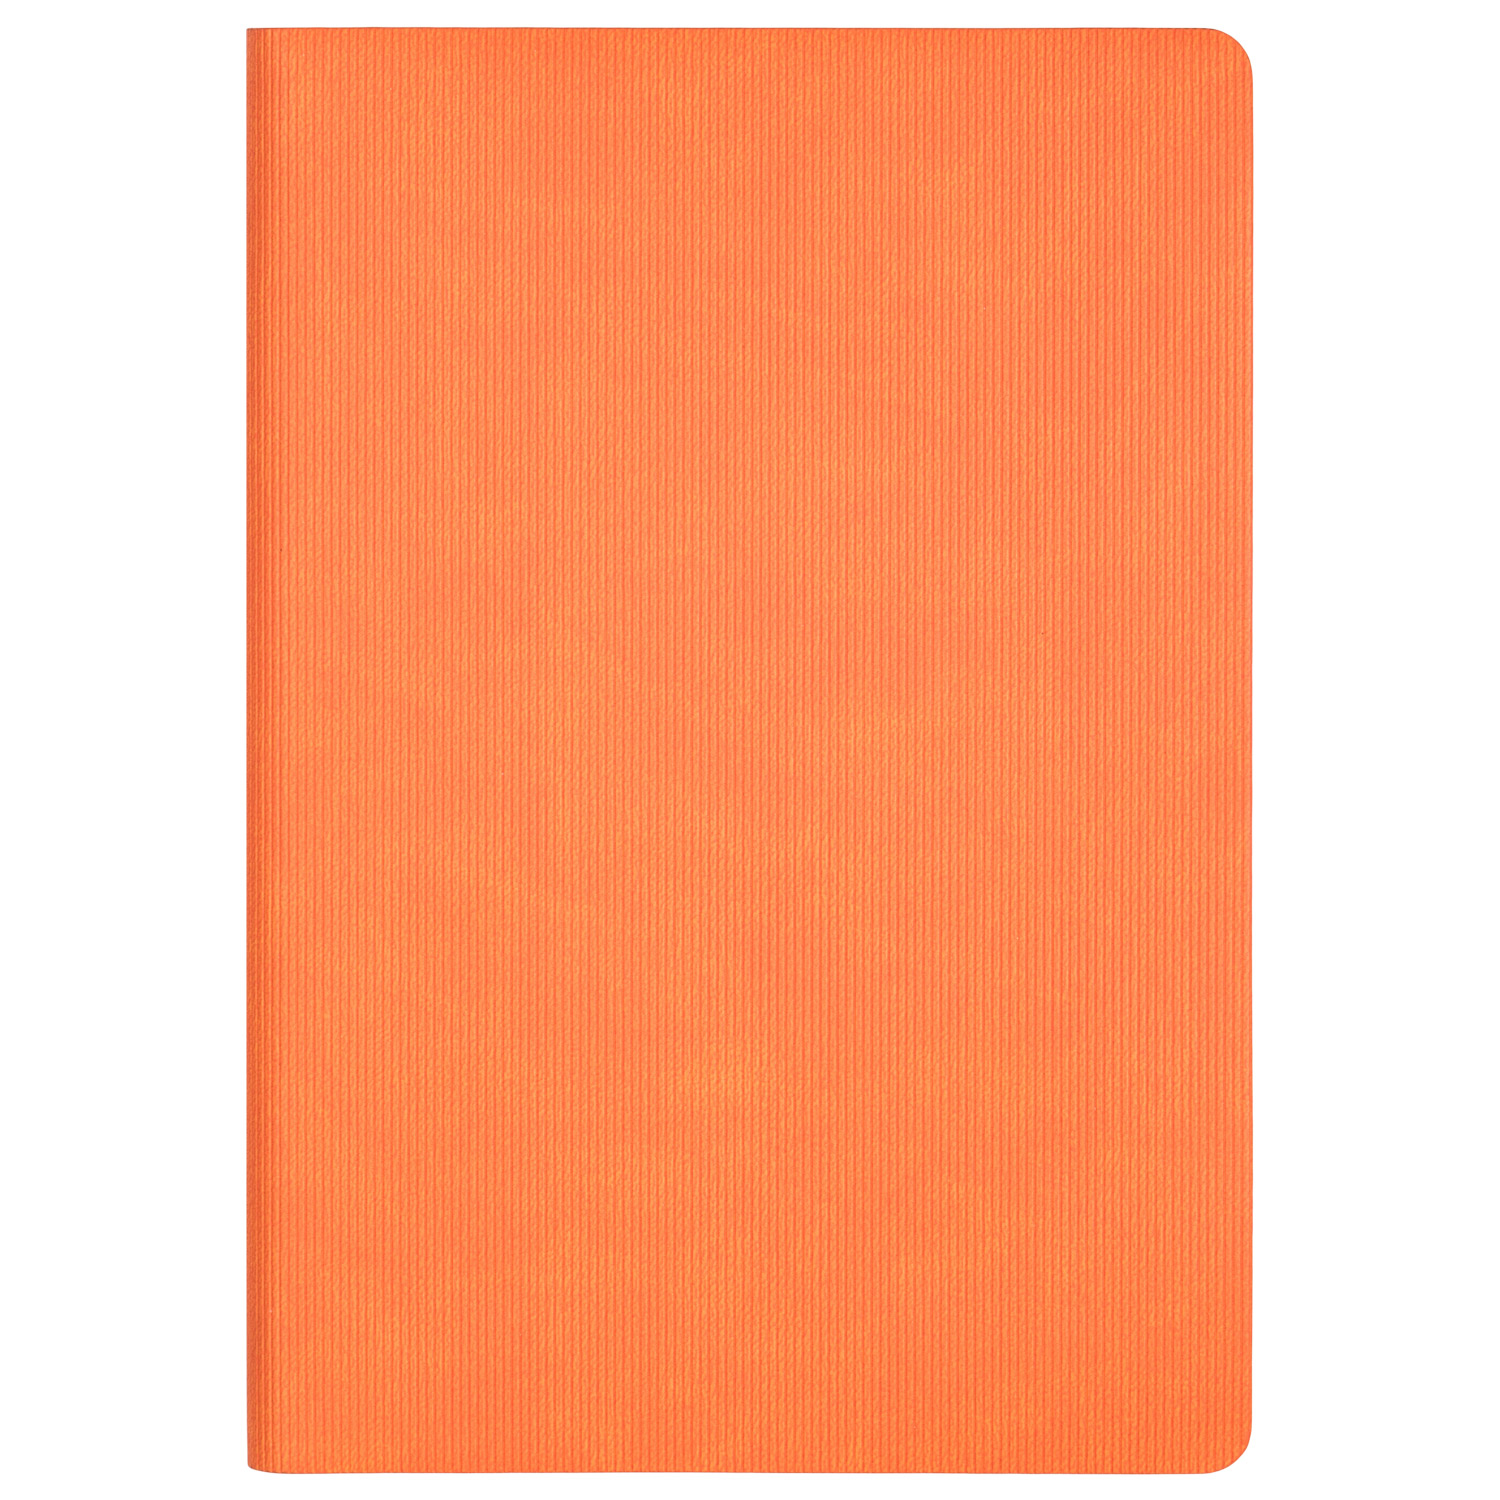 Ежедневник Portobello Trend, Rain, недатированный, оранжевый (без упаковки, без стикера)